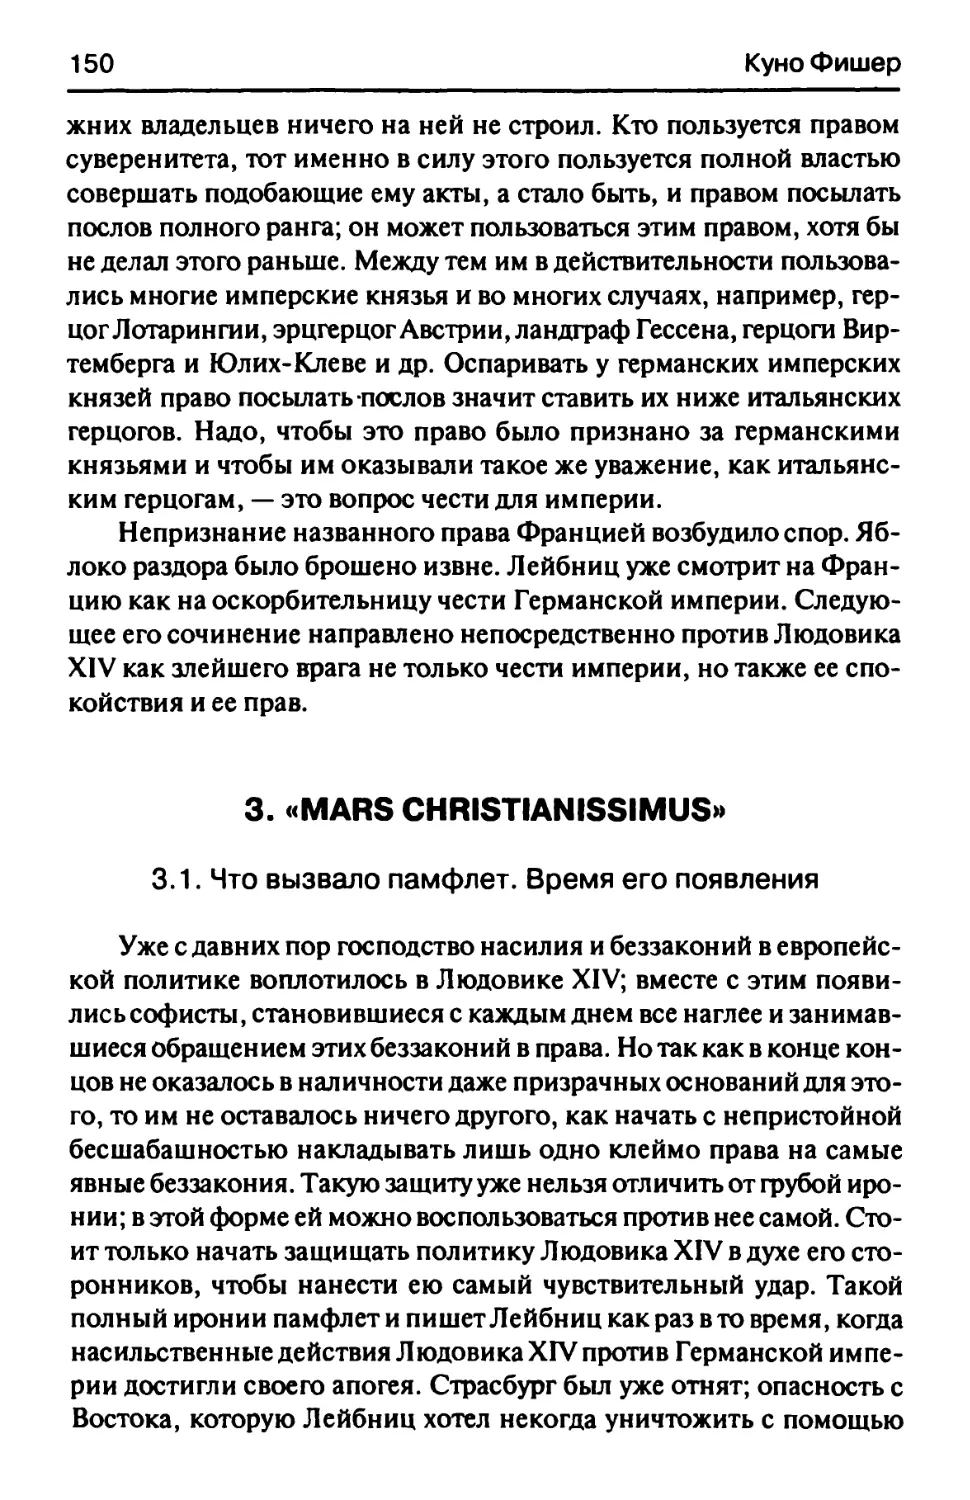 3. «Mars Christianissimus»
3.1. Что вызвало памфлет. Время его появления